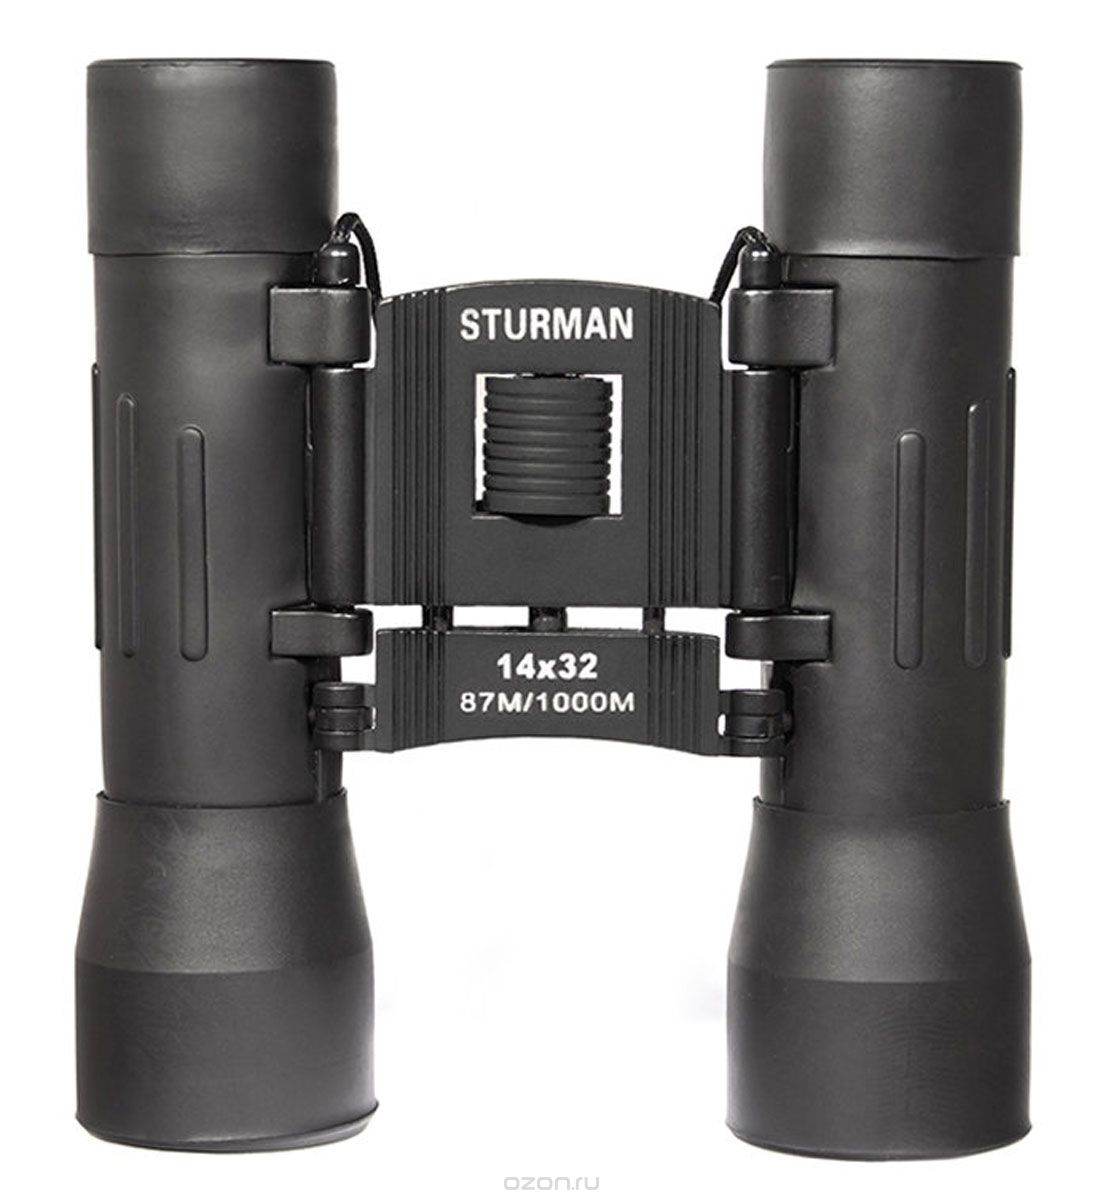 Sturman 14x32, Black 